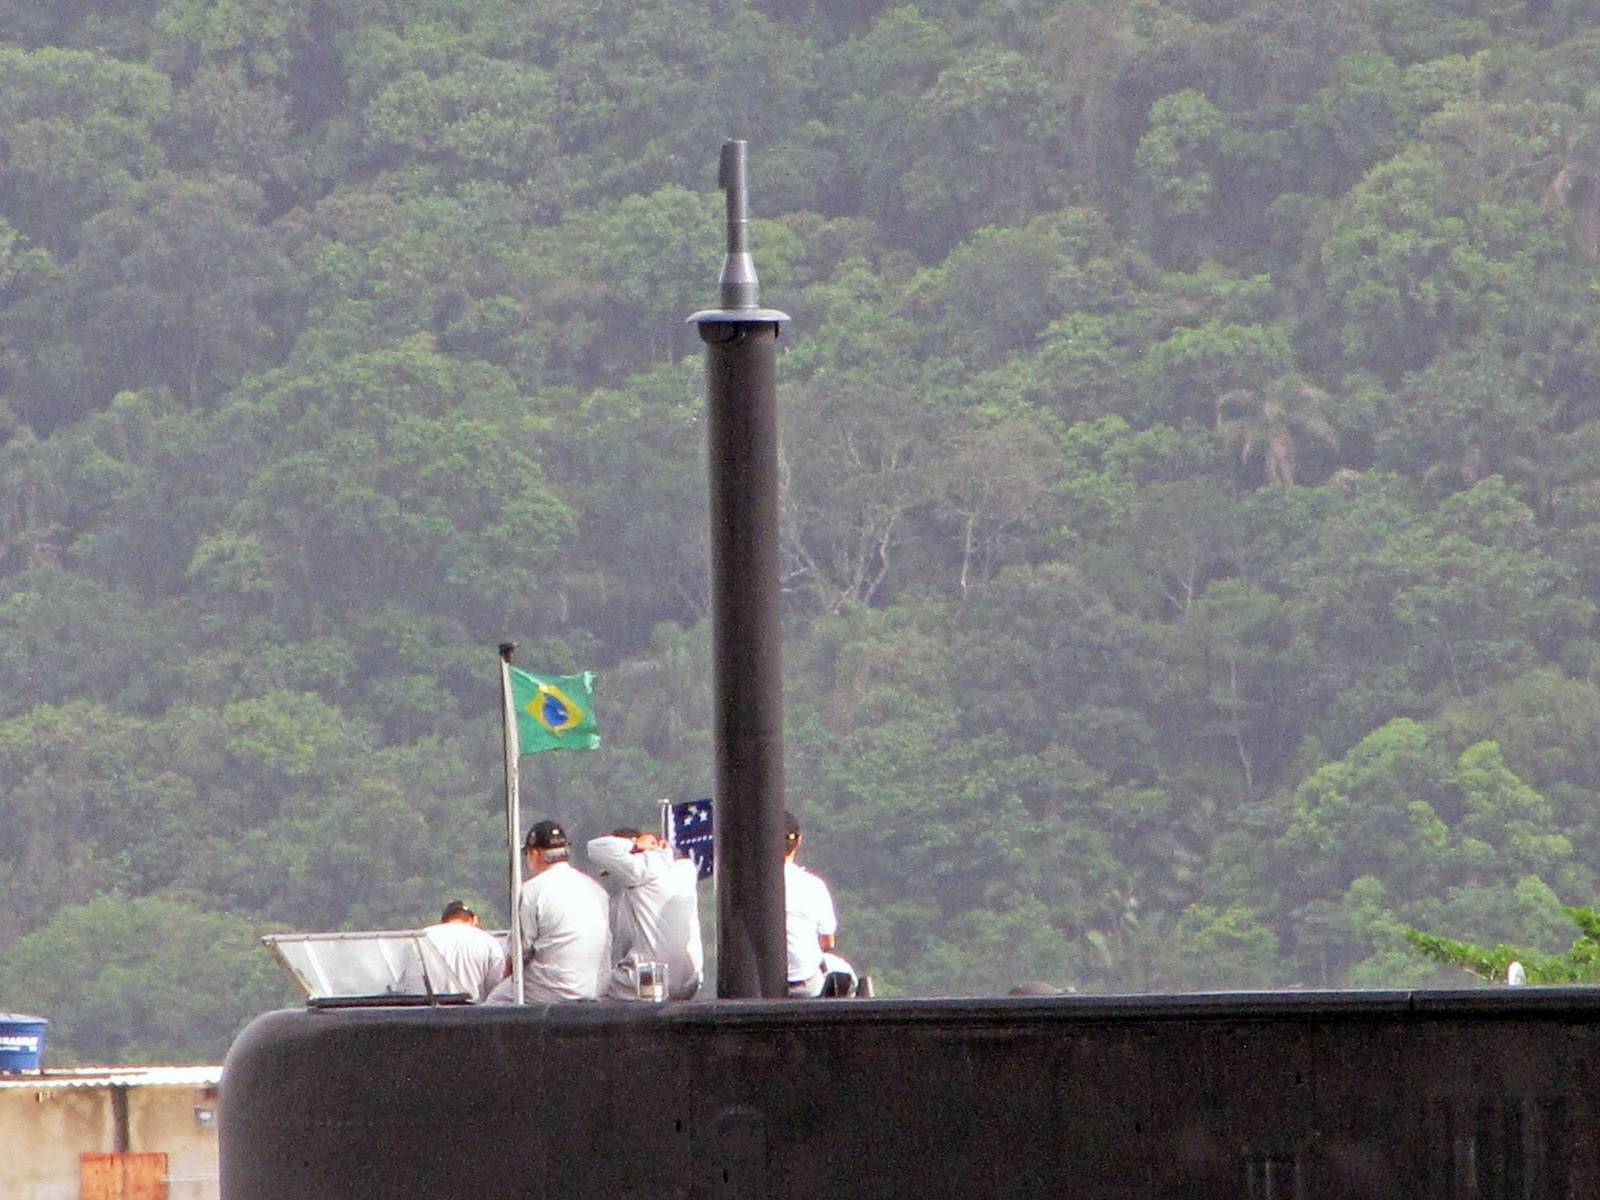 Detalhe da vela do Timbira entrando em Santos em 12 de dezembro de 2010, onde se pode notar um dos mastros de periscópio sem a tradicional camuflagem e a flâmula de Vice-Almirante embarcado, provavelmente o Comandante do 8º Distrito Naval. (foto: Gustavo C. Sousa)